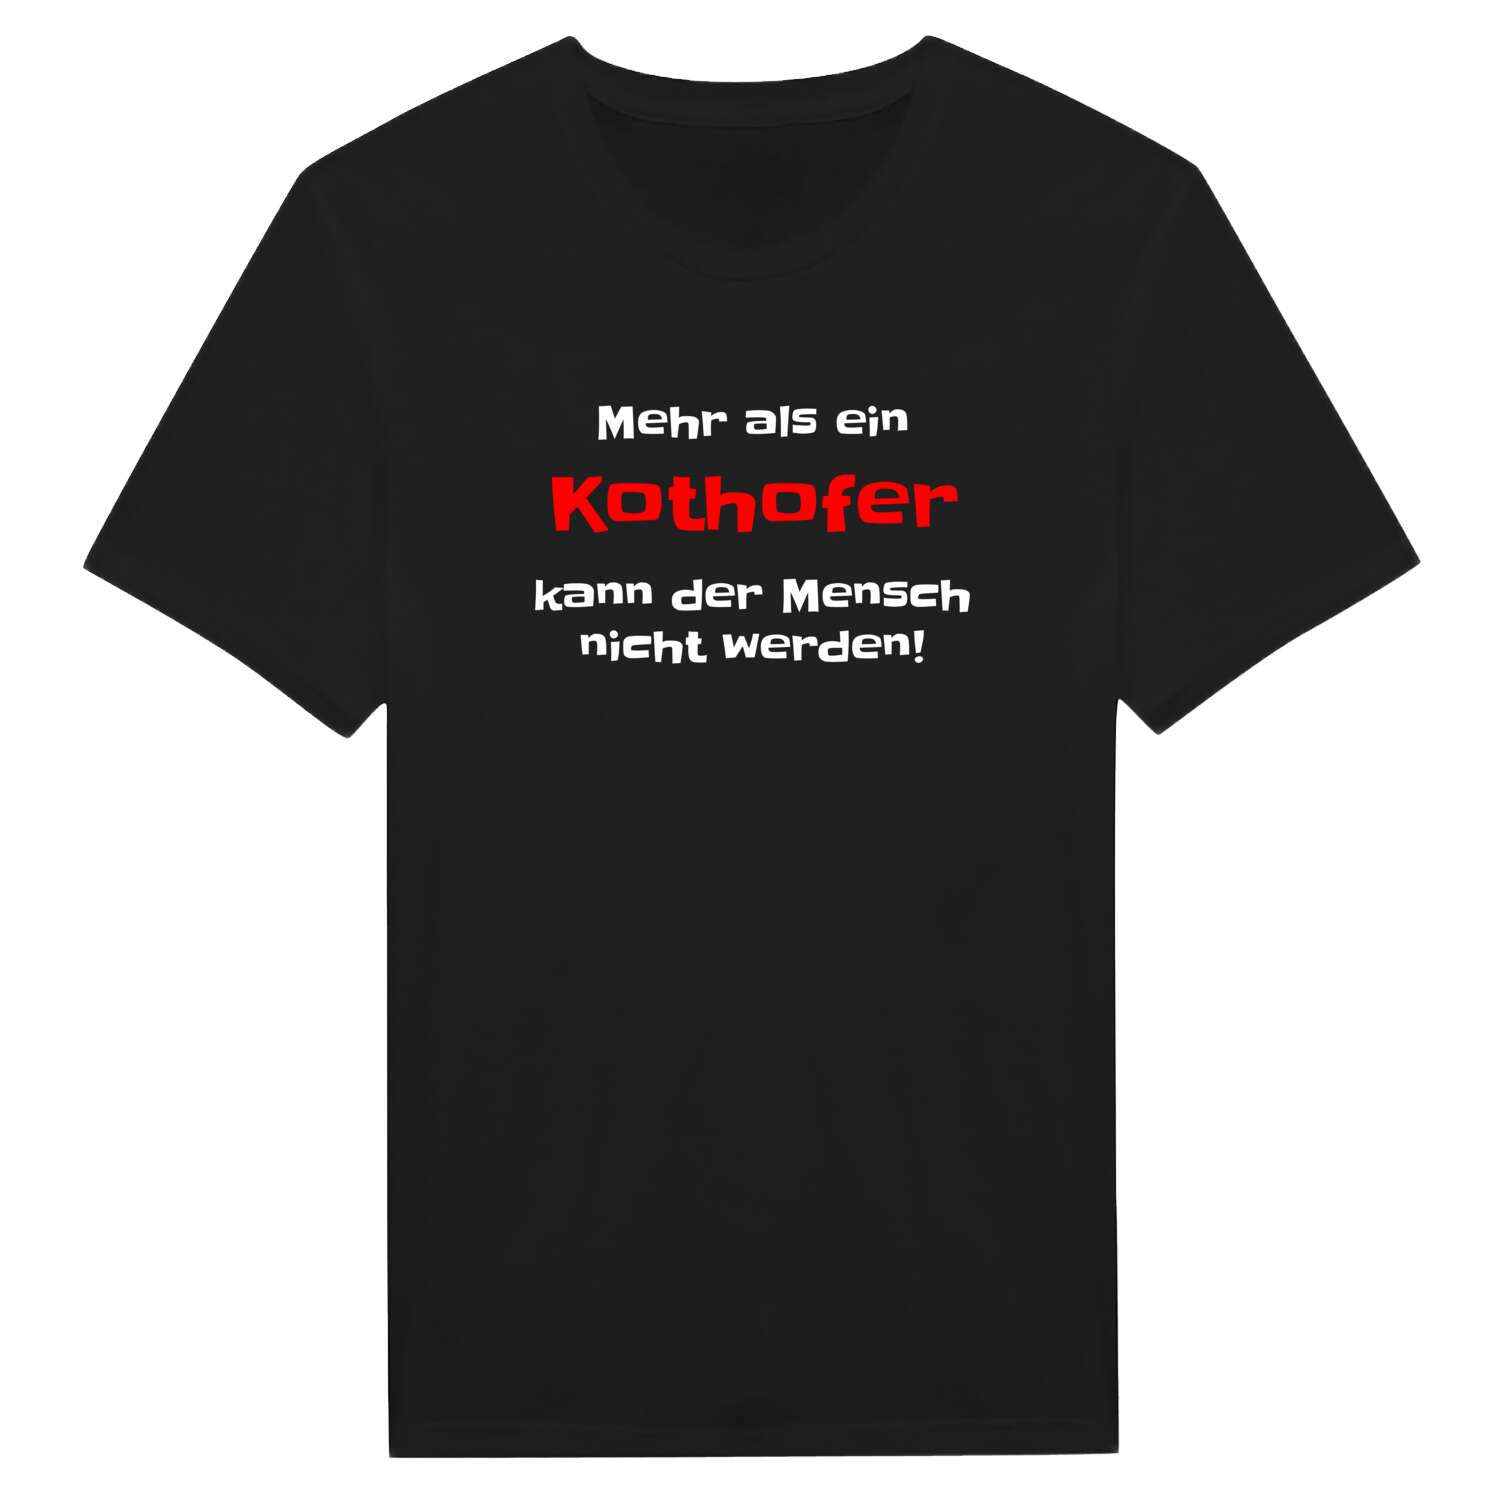 Kothof T-Shirt »Mehr als ein«